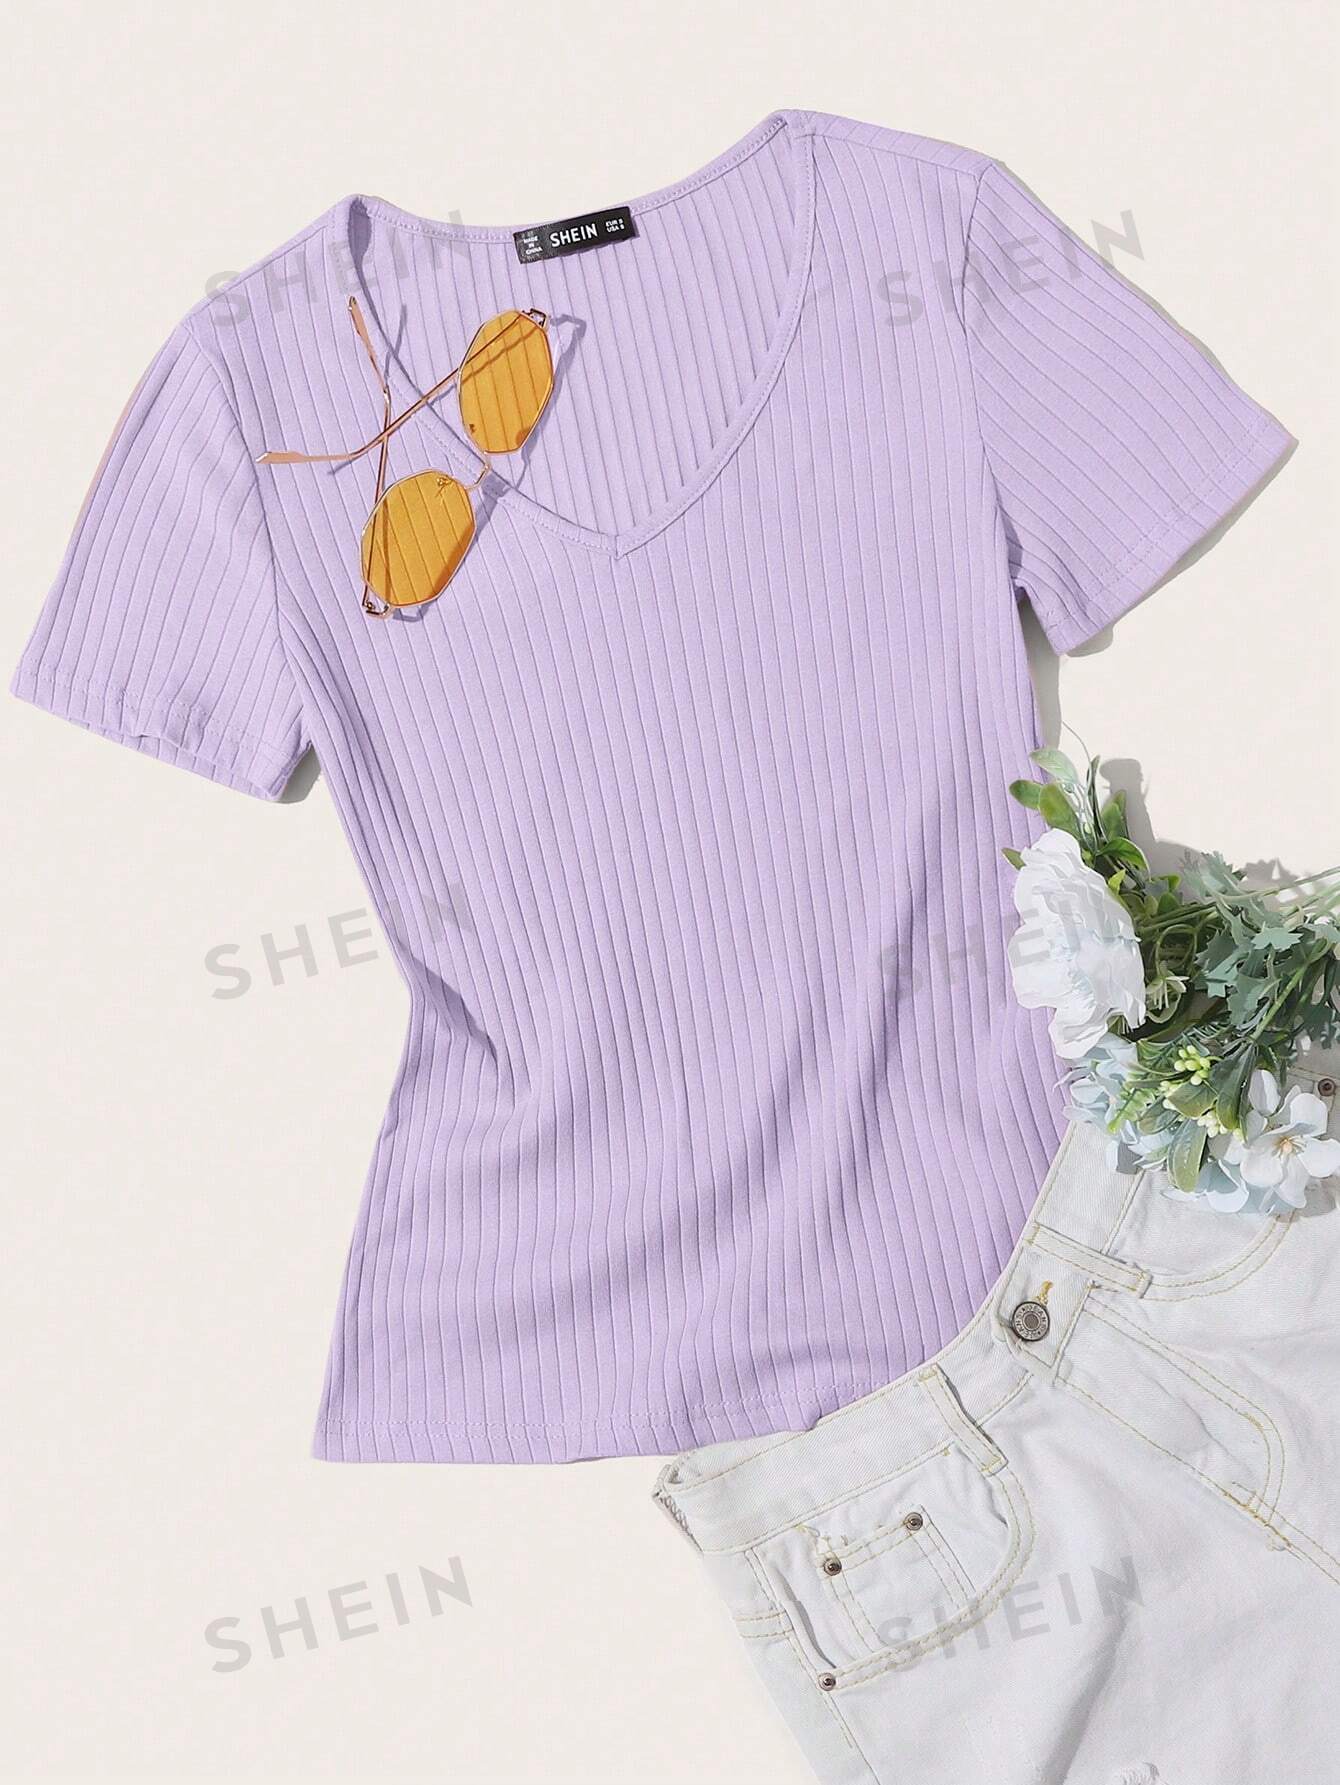 SHEIN Essnce однотонная повседневная трикотажная футболка в рубчик с короткими рукавами, сиреневый фиолетовый